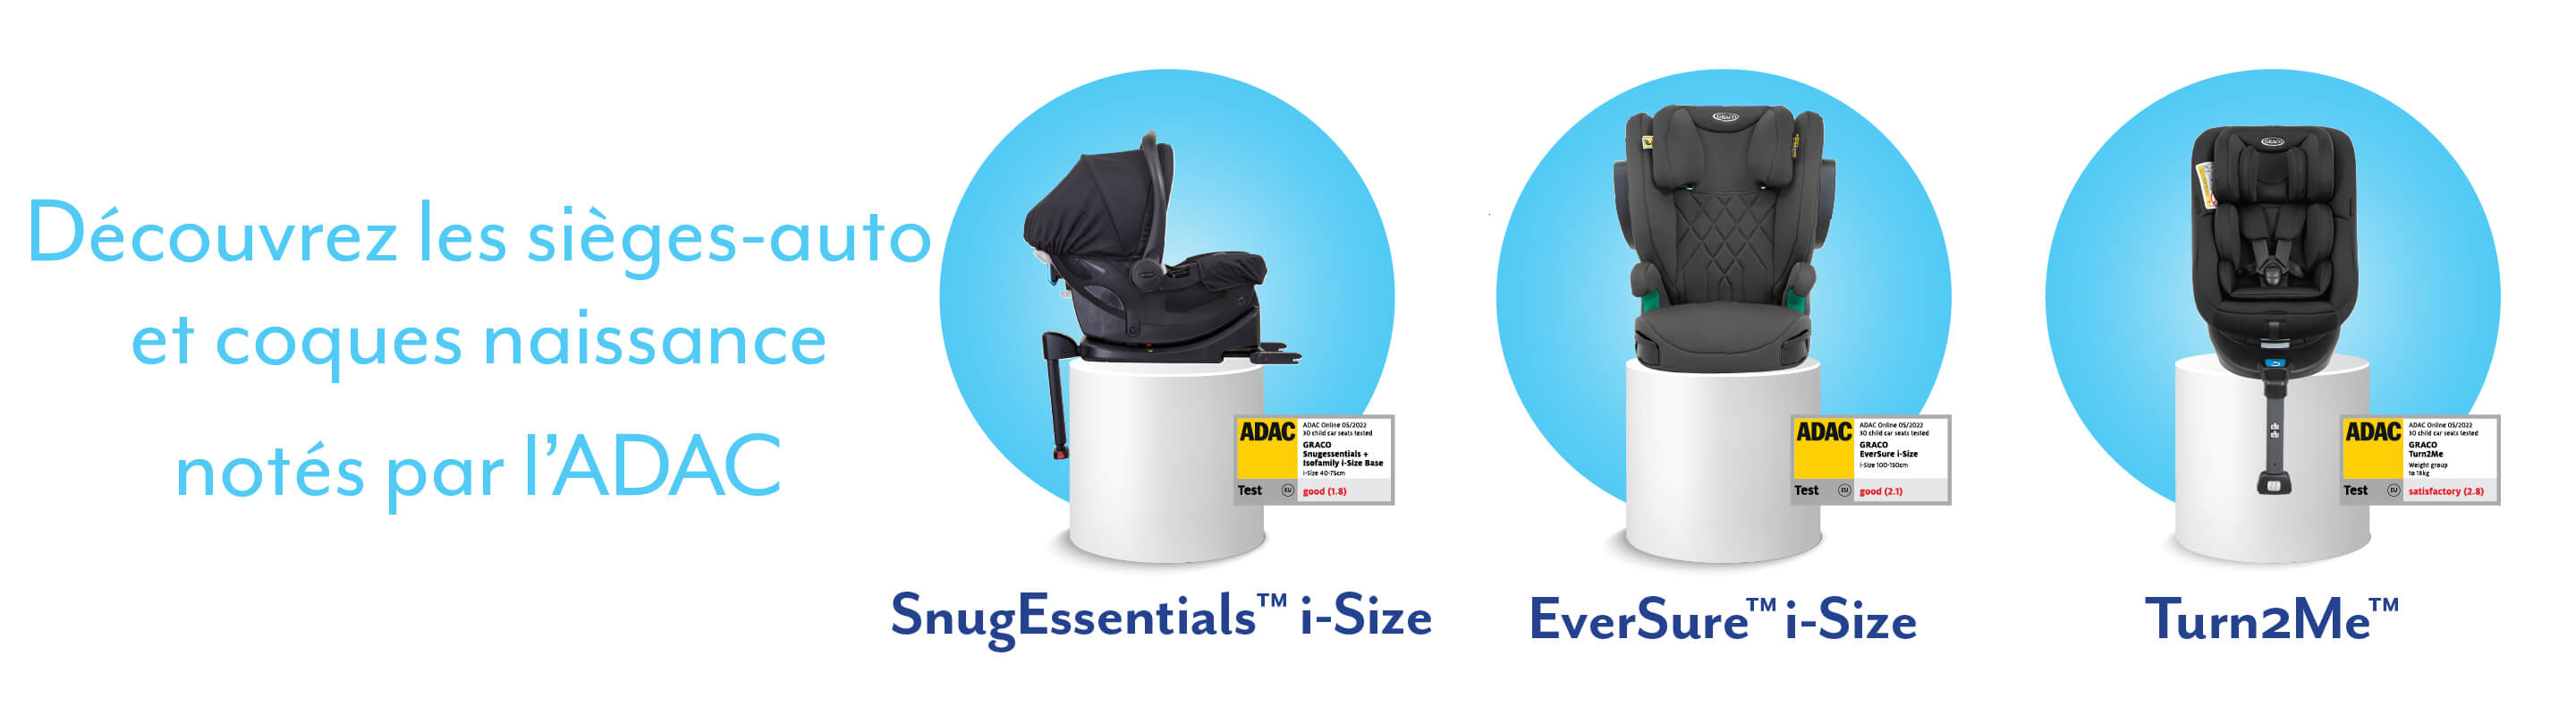 Les sièges-auto et coques naissance SnugEssentials™ i-Size, EverSure™ i-Size et Turn2Me™ de Graco® installés sur des socles blancs